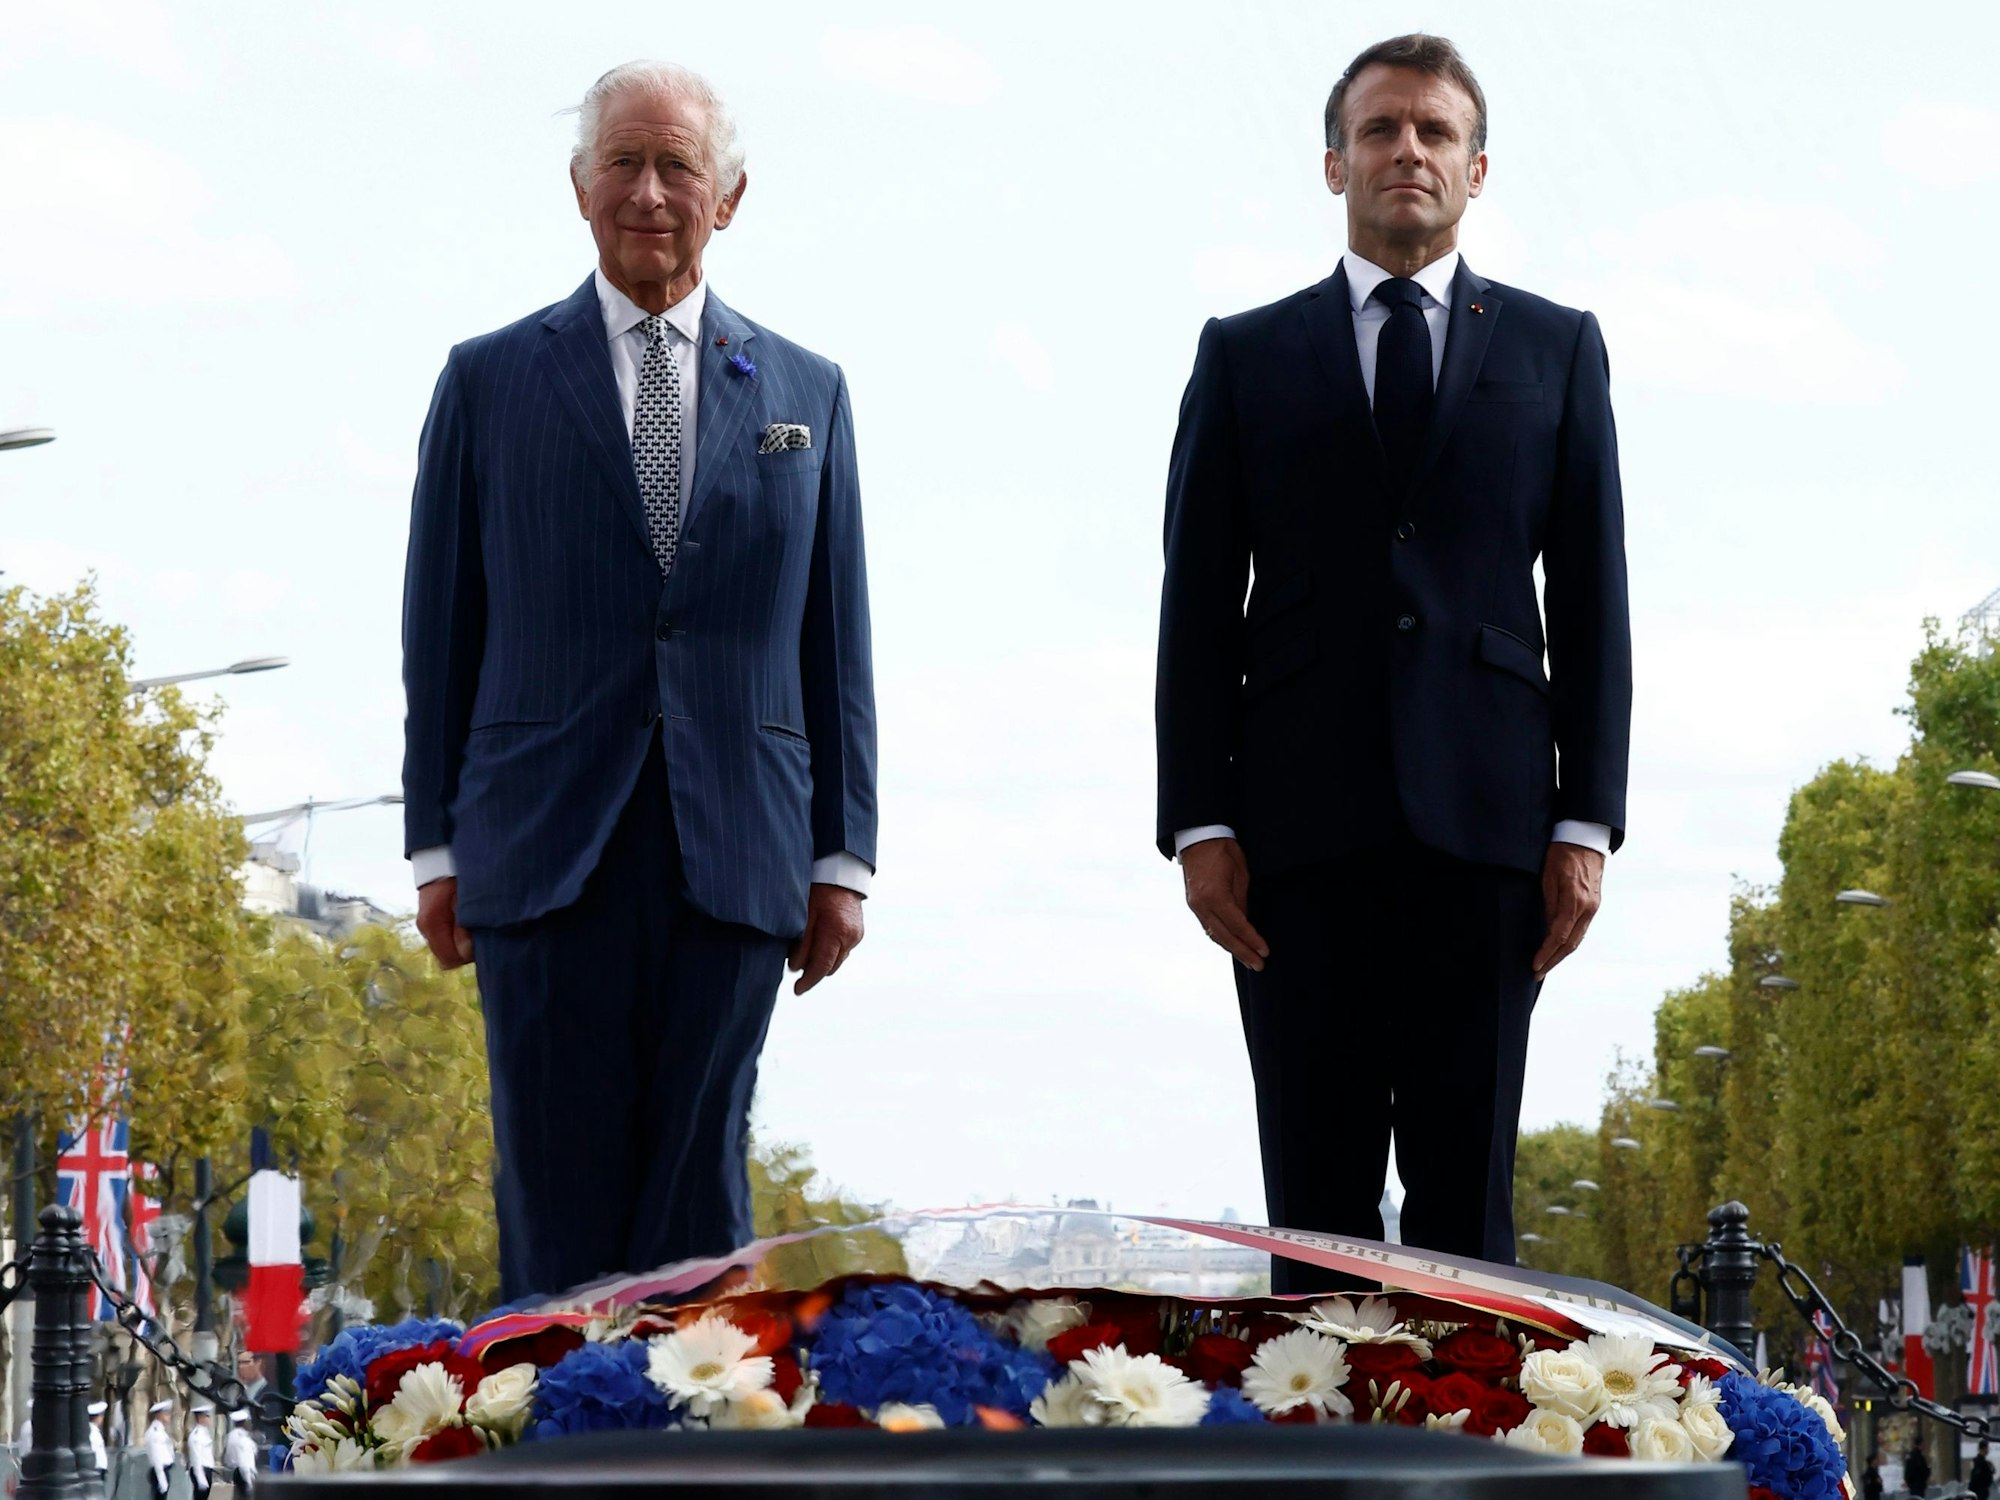 König Charles III. (l) von Großbritannien und Emmanuel Macron, Präsident von Frankreich, bei der feierlichen Begrüßung am Arc de Triomphe zu Beginn des Staatsbesuchs.